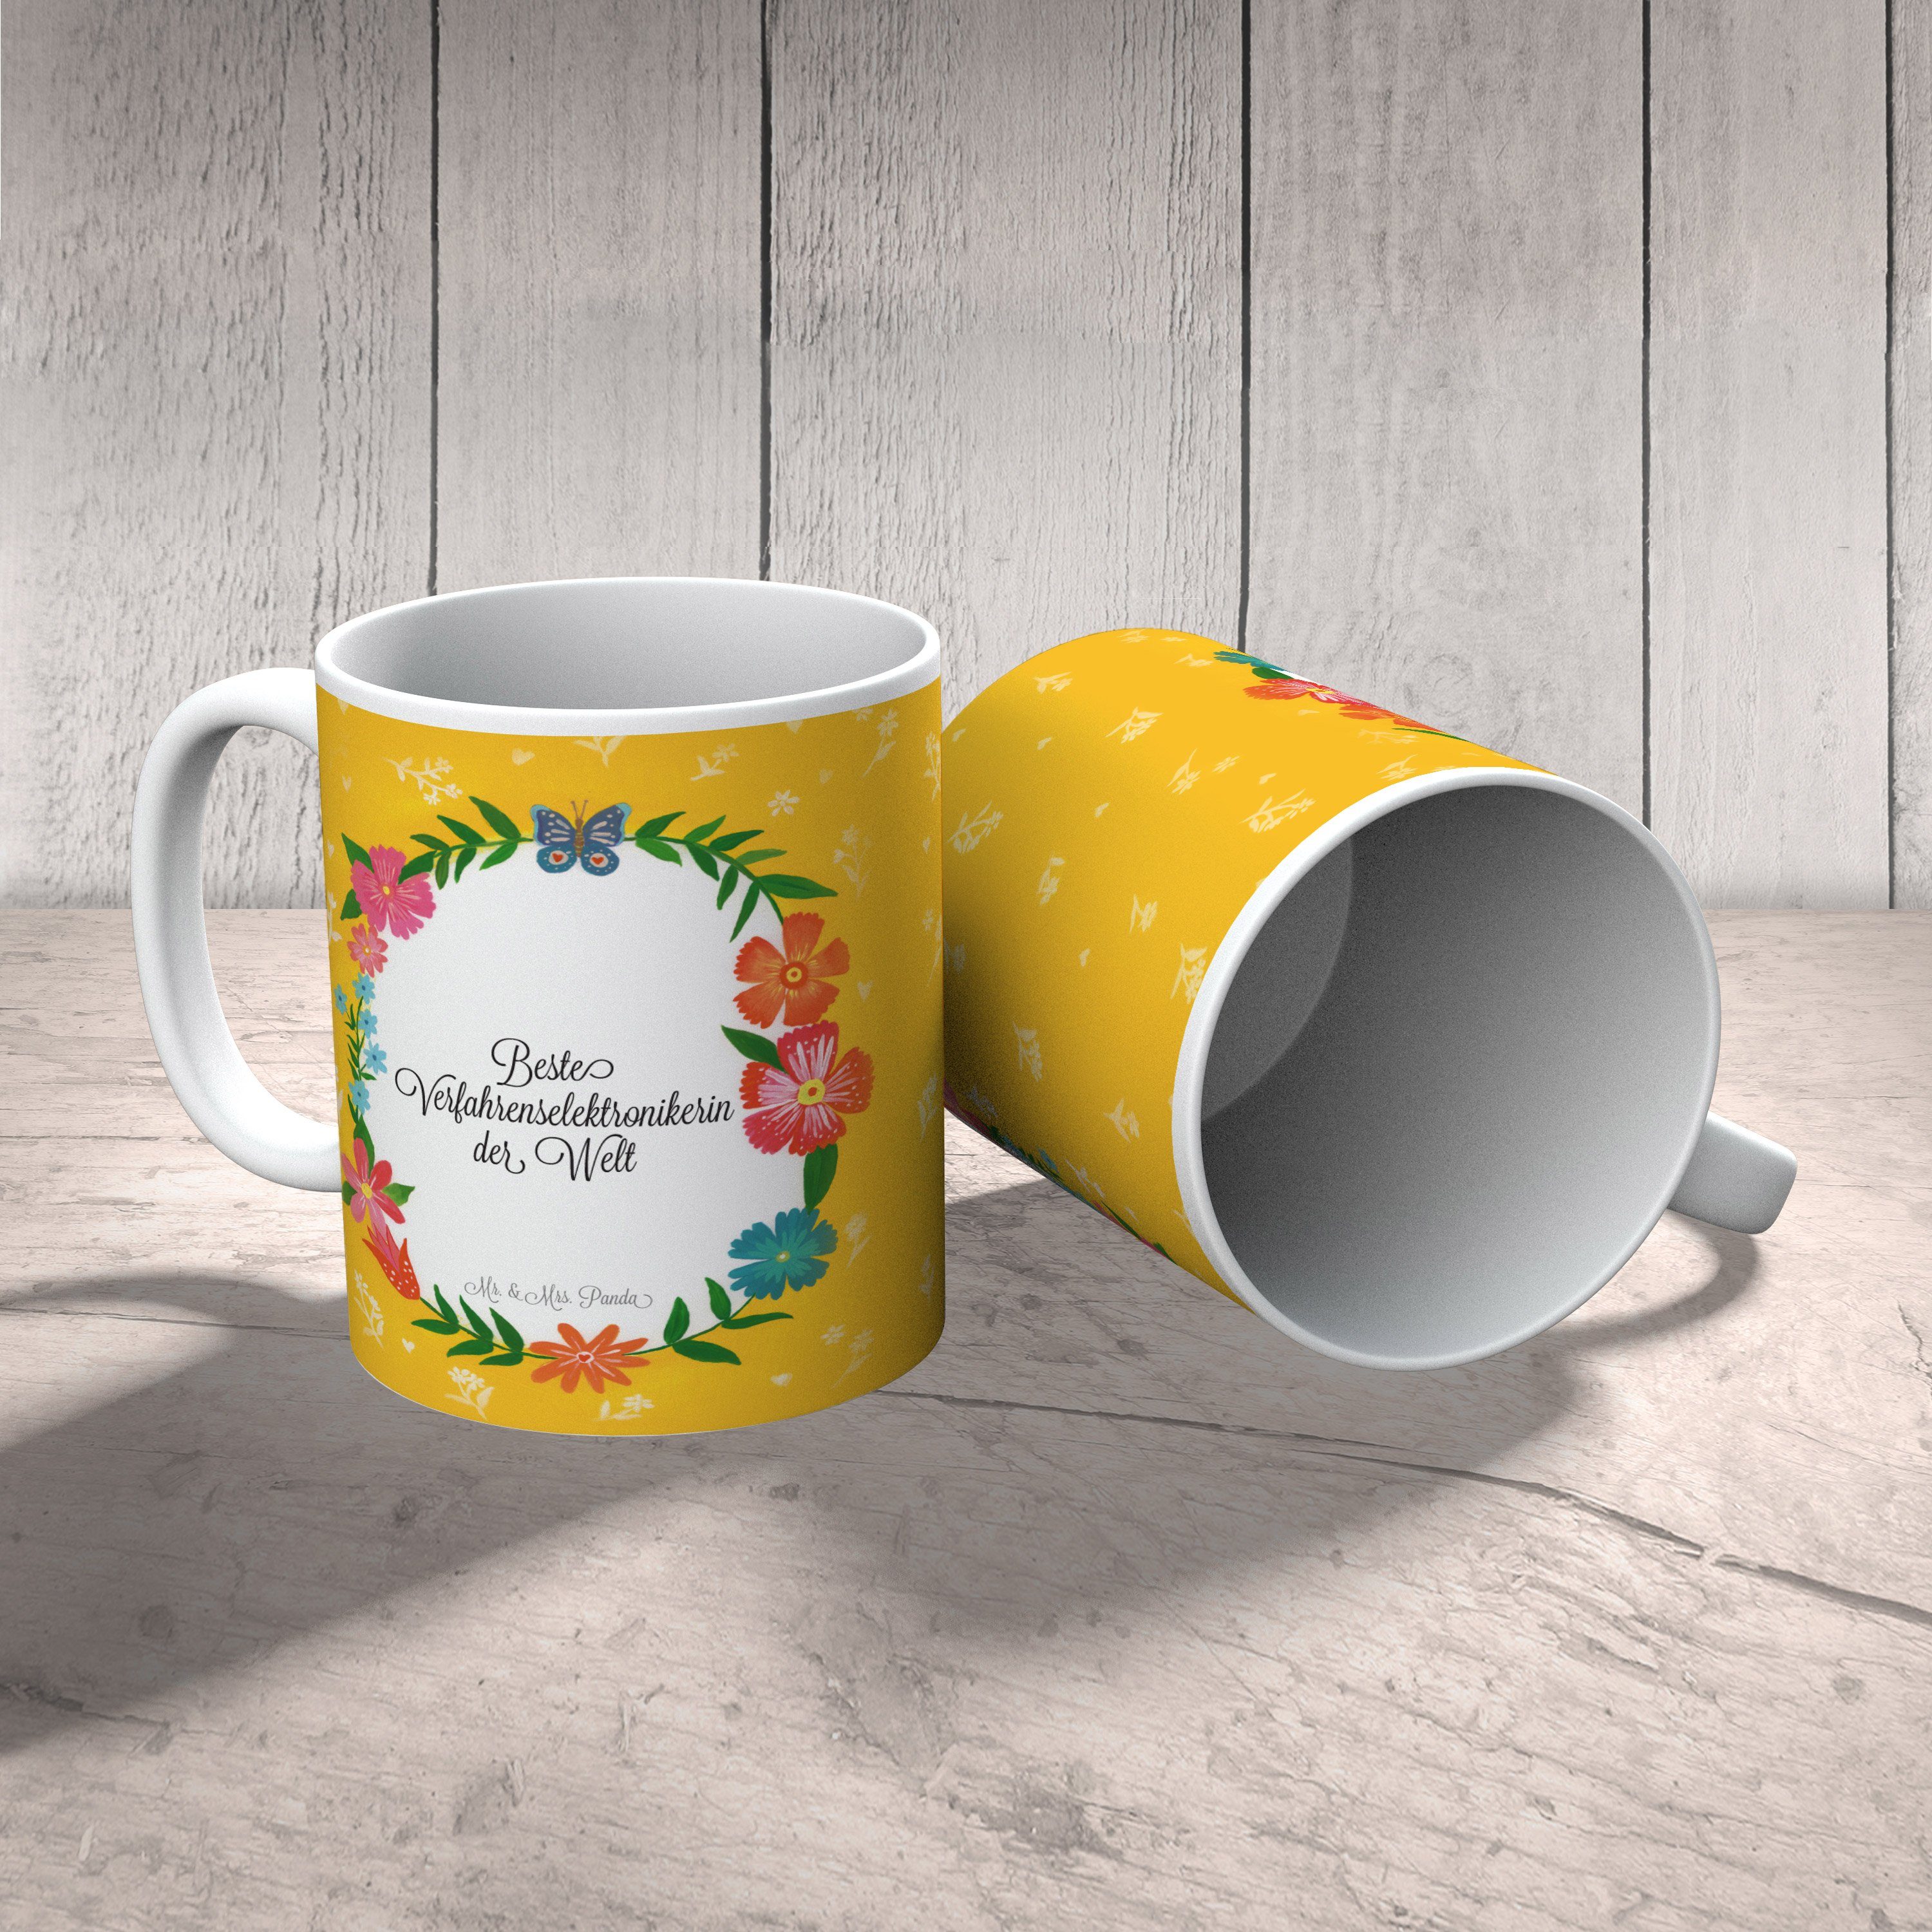 Tasse Geschenk, Kaffeebecher, Verfahrenselektronikerin Mr. Panda Keramik - Mrs. Ausbi, & Gratulation,